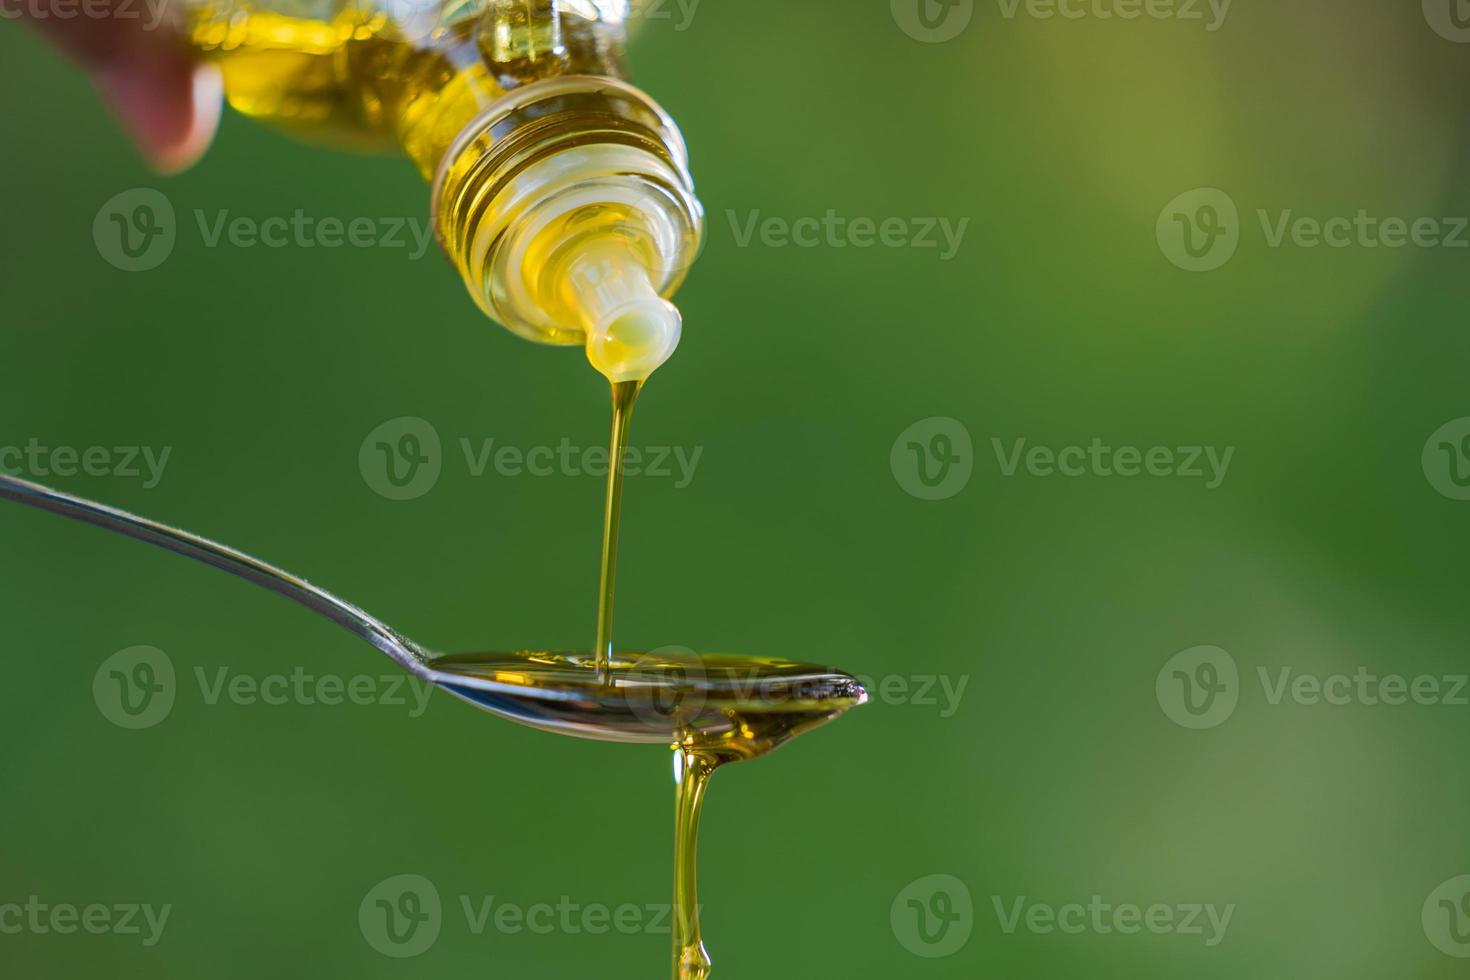 Verter el aceite de oliva en una cuchara en el fondo del jardín del parque verde foto